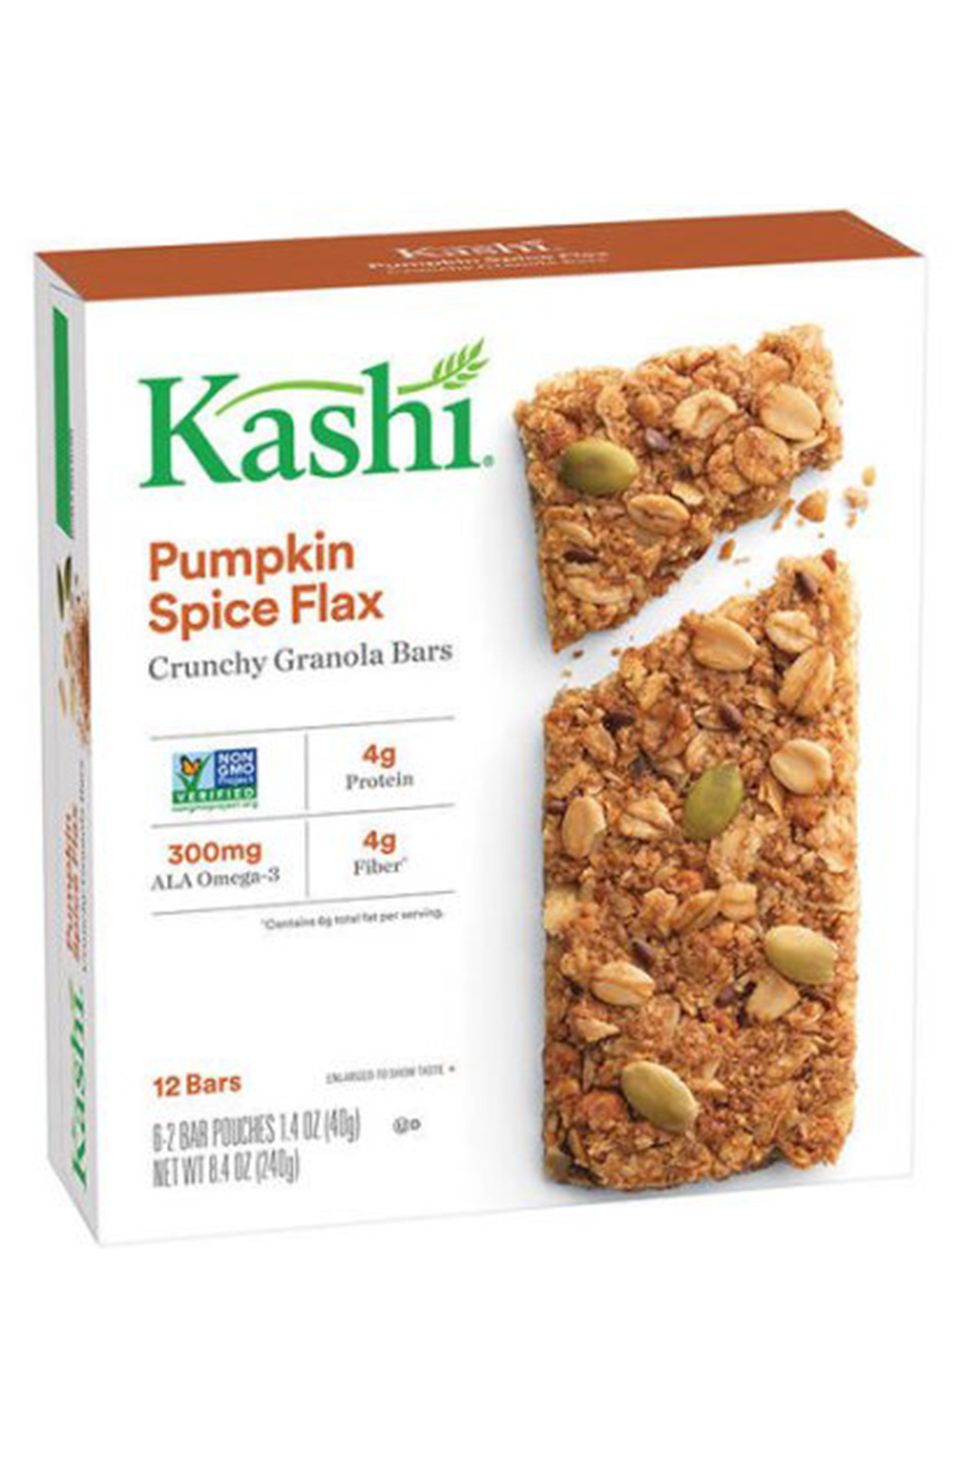 Kashi Crunchy Granola Bars in Pumpkin Spice Flax 